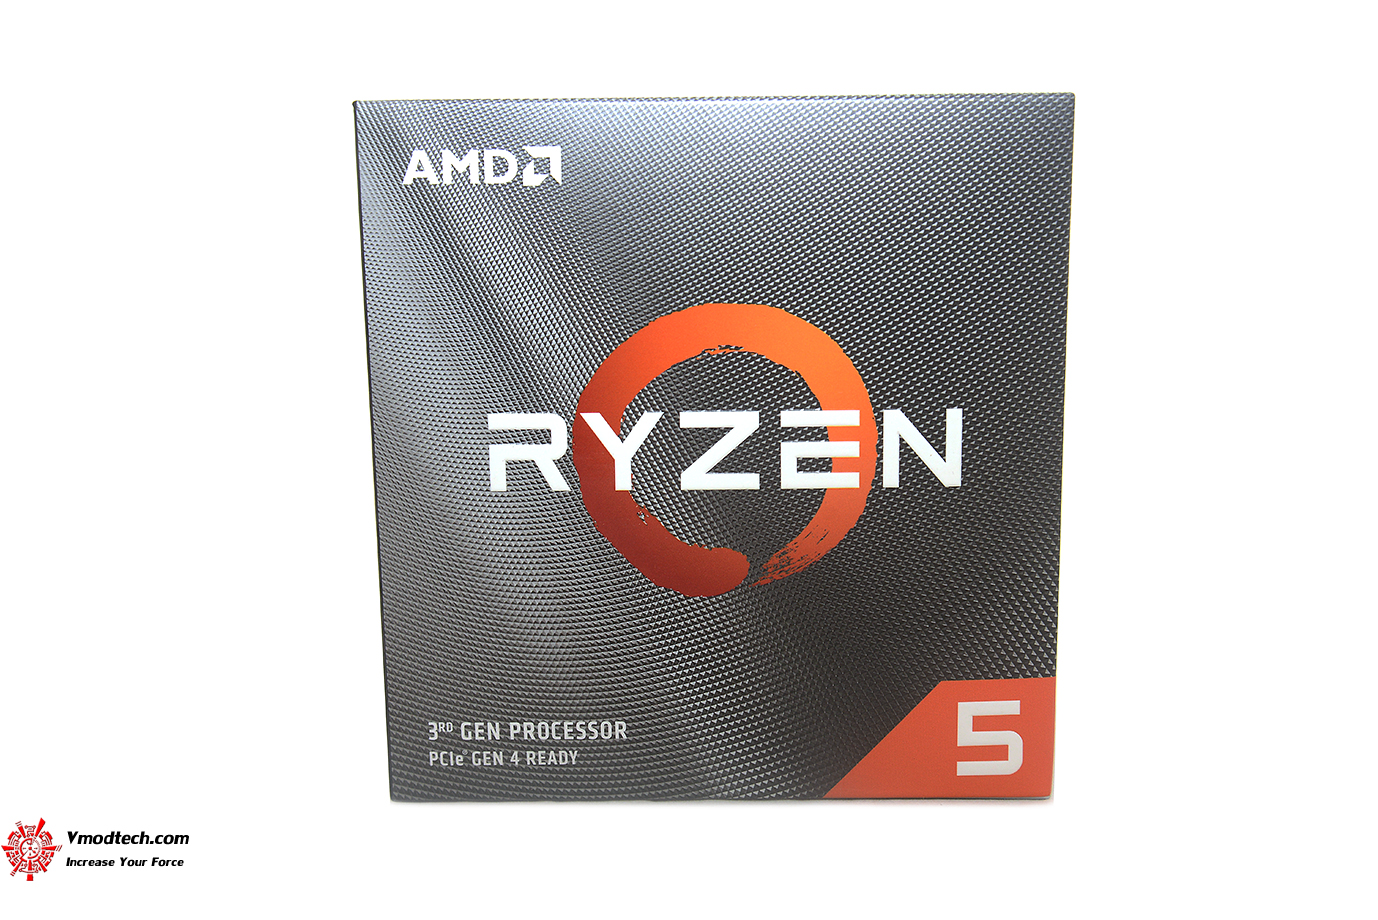 dsc 8926 AMD RYZEN 5 3600 PROCESSOR REVIEW 